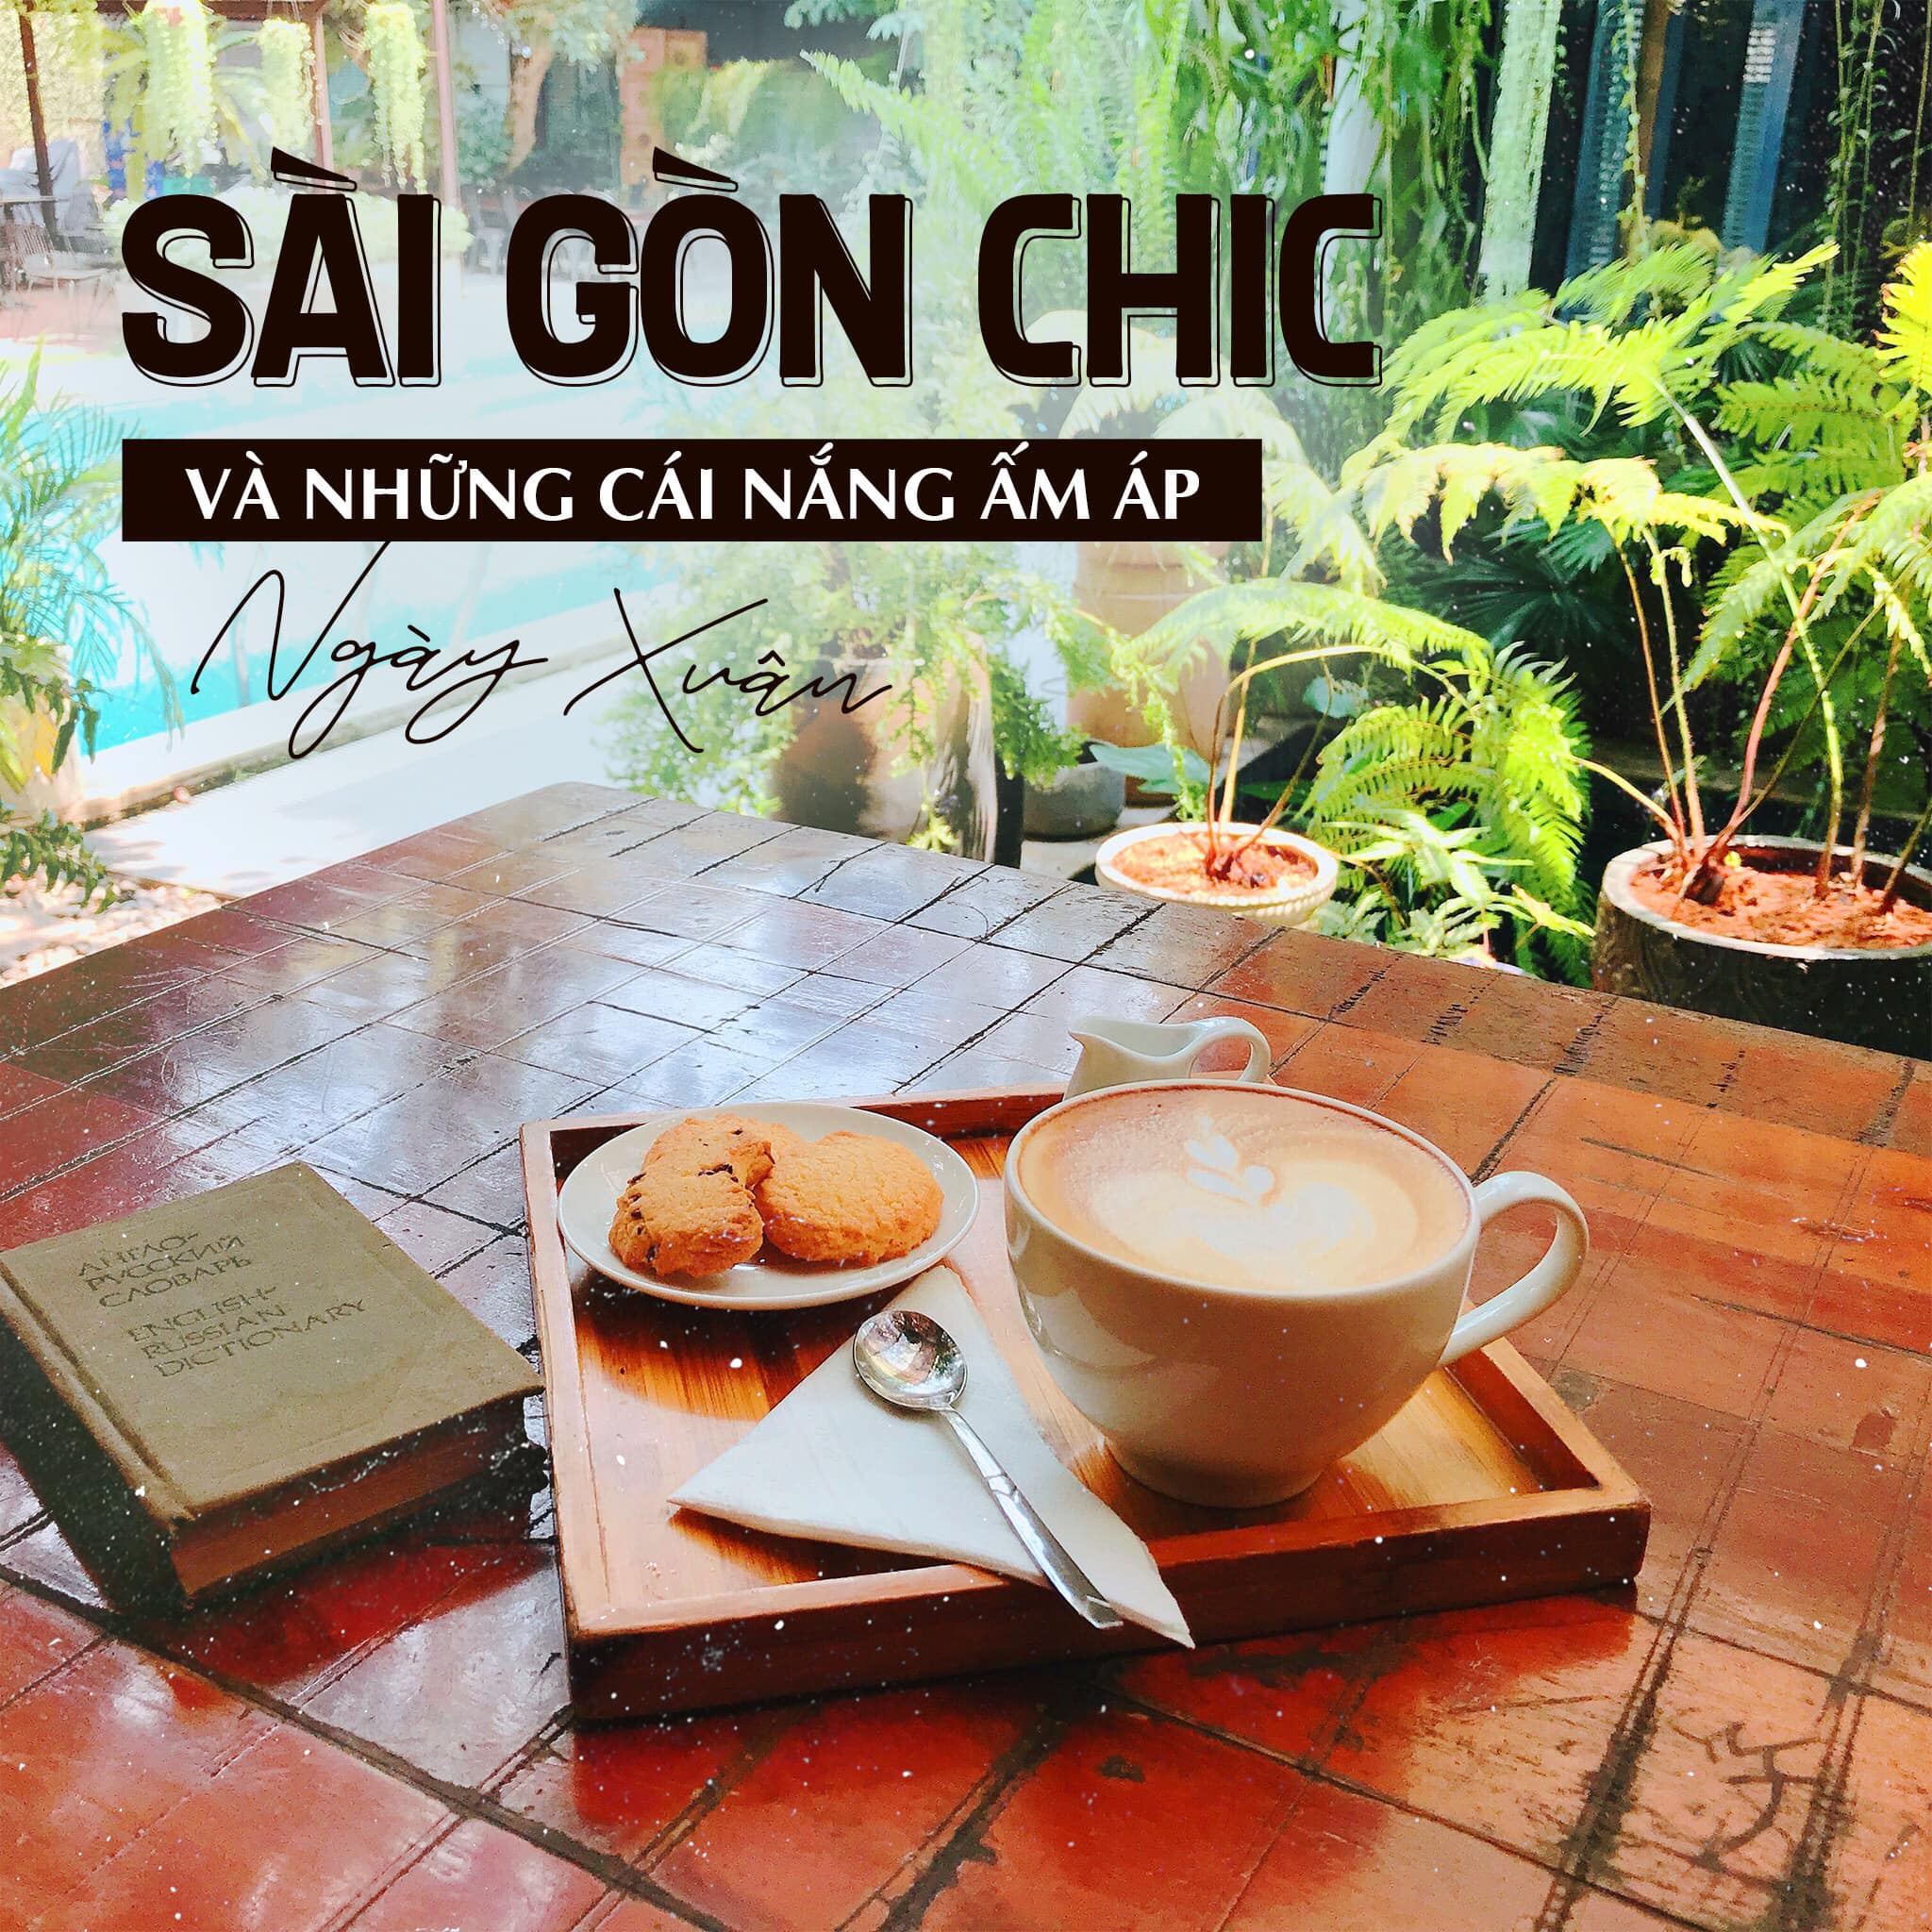 Saigonchic là quán cà phê ăn sáng ở Sài Gòn được giới trẻ và dân văn phòng đặc biệt yêu thích